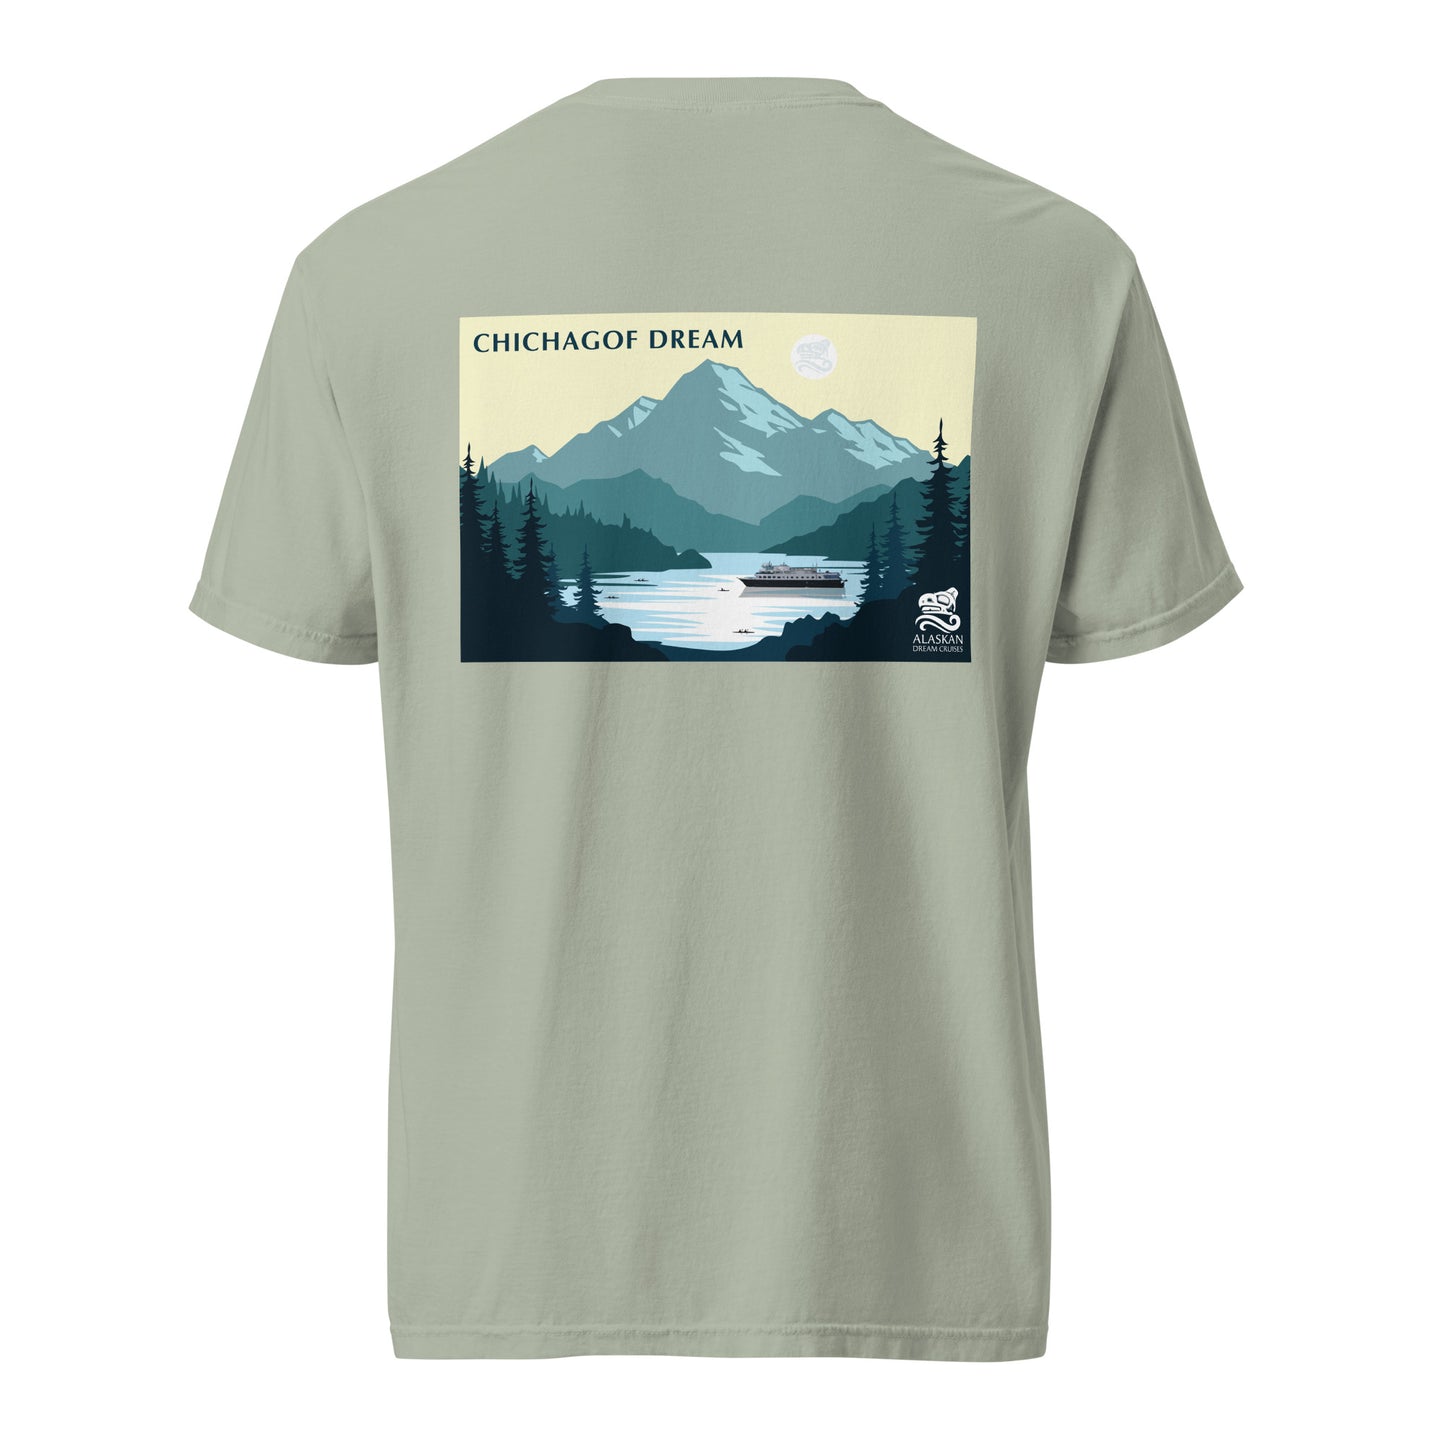 Chichagof Dream t-shirt